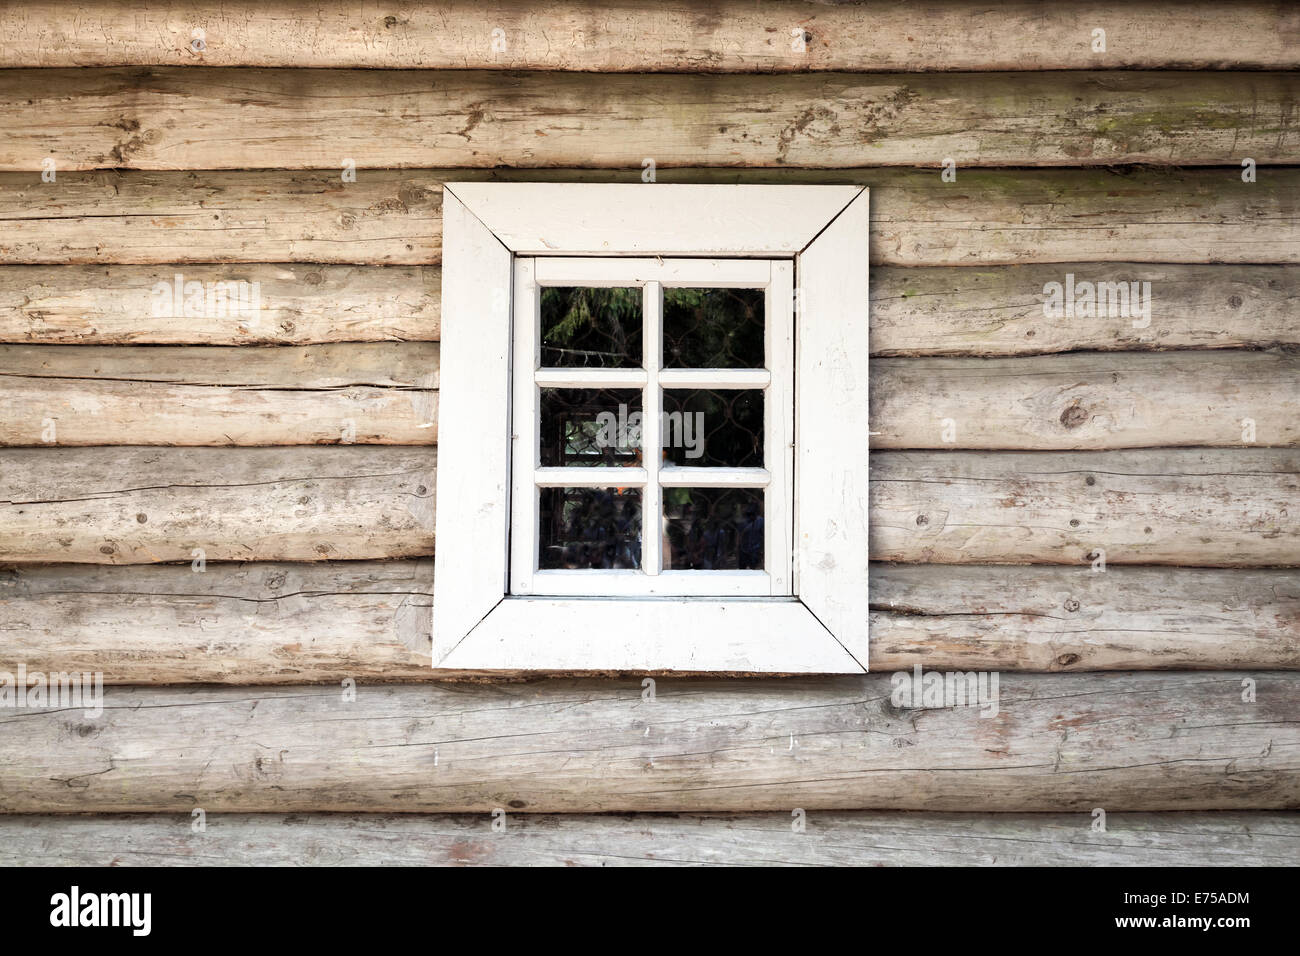 Antigua casa de madera pared con ventana pequeña, textura de fondo Foto de stock